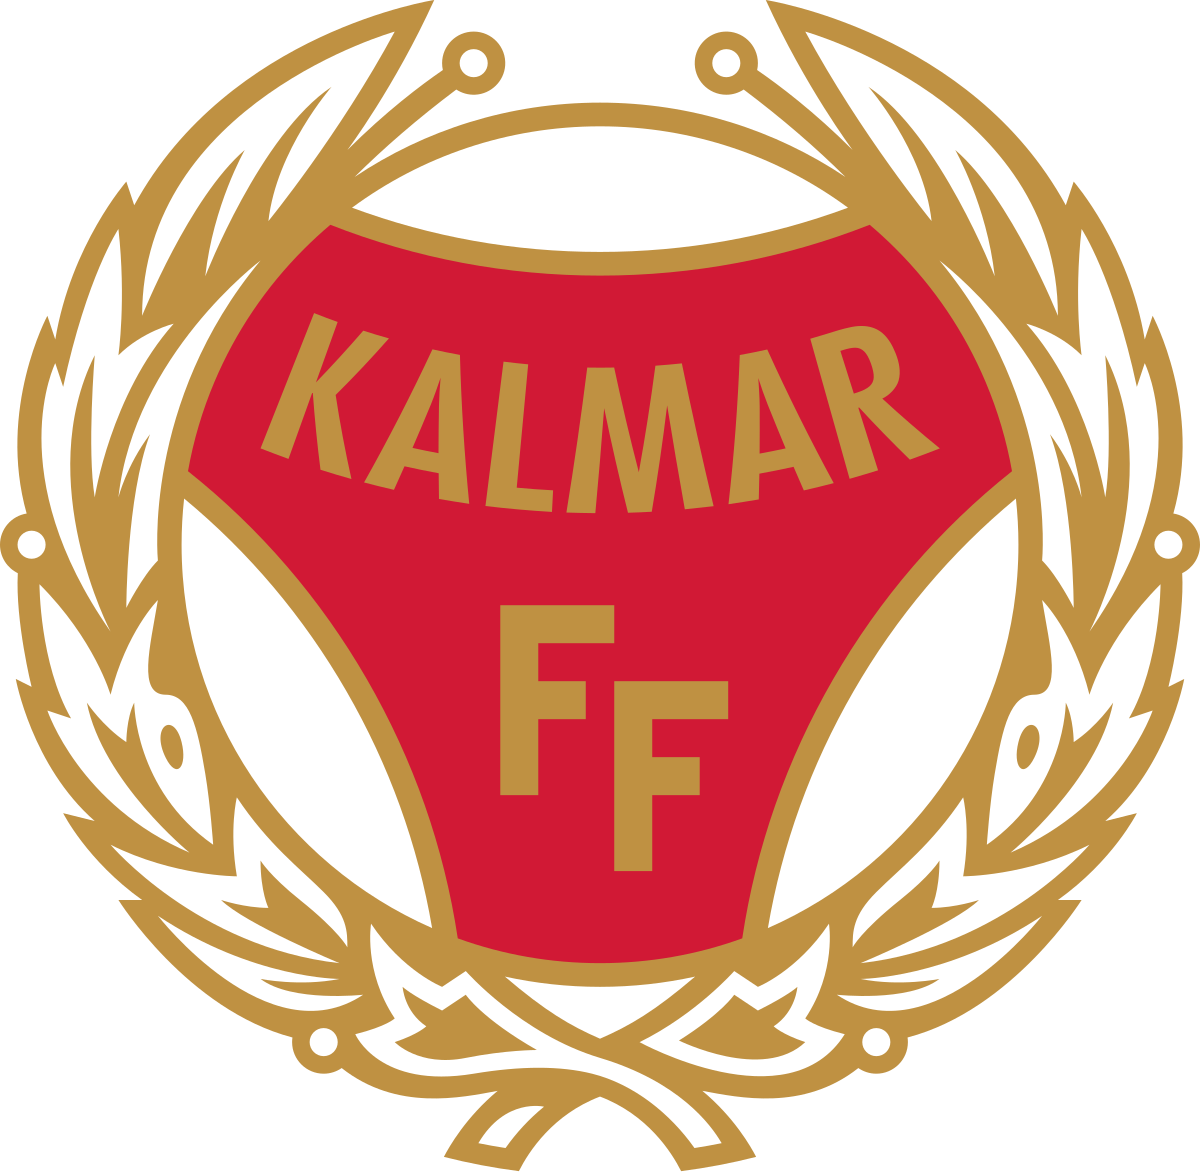 Kalmar FF - Wikipedia